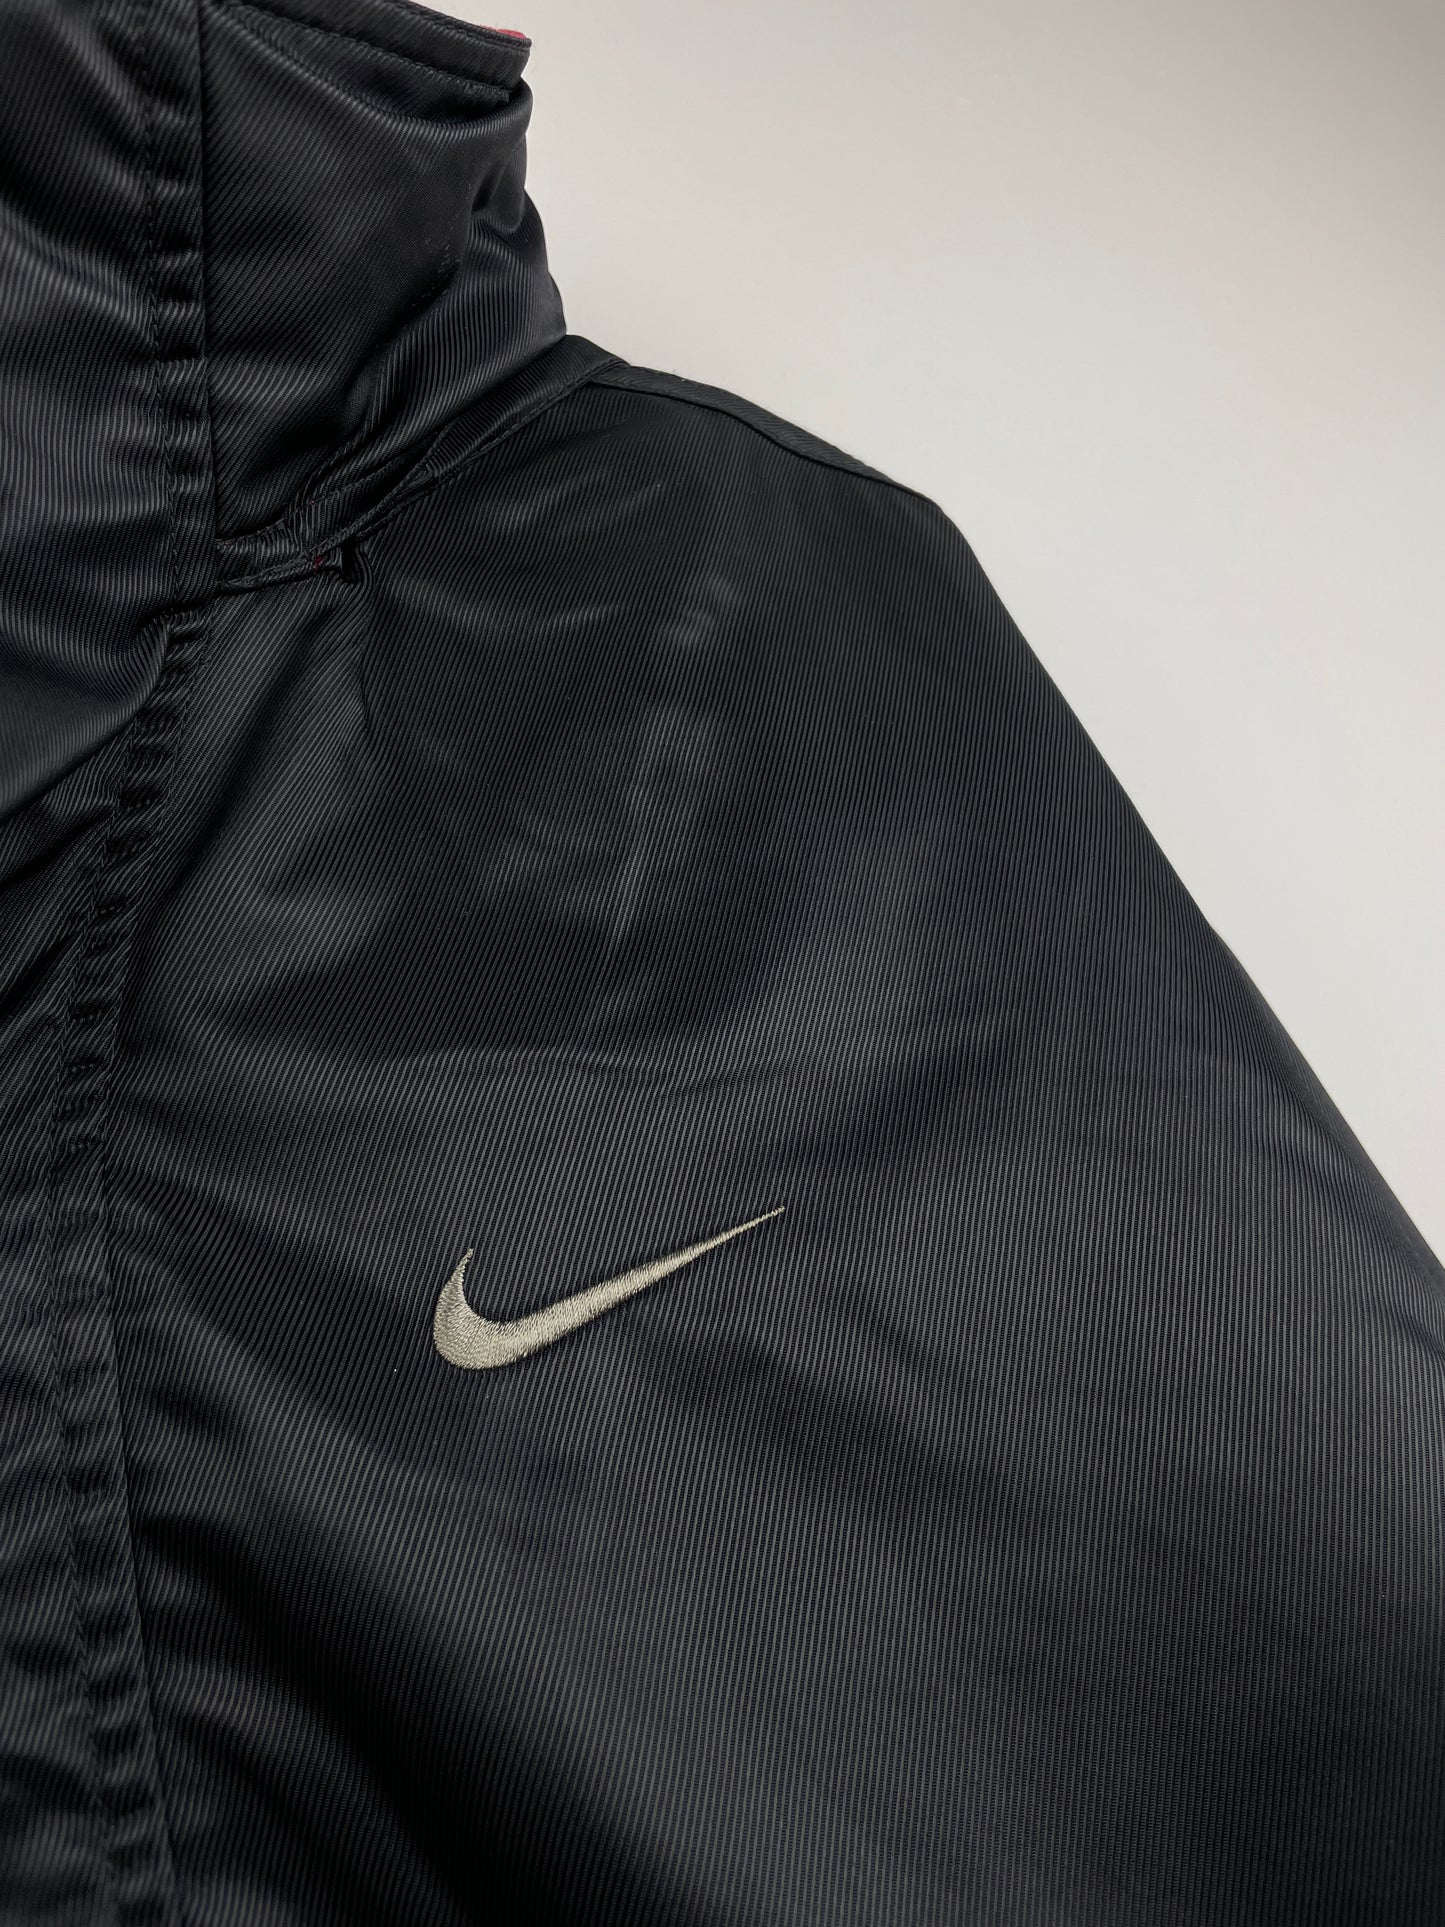 Nike Quarter-Zip Jacket